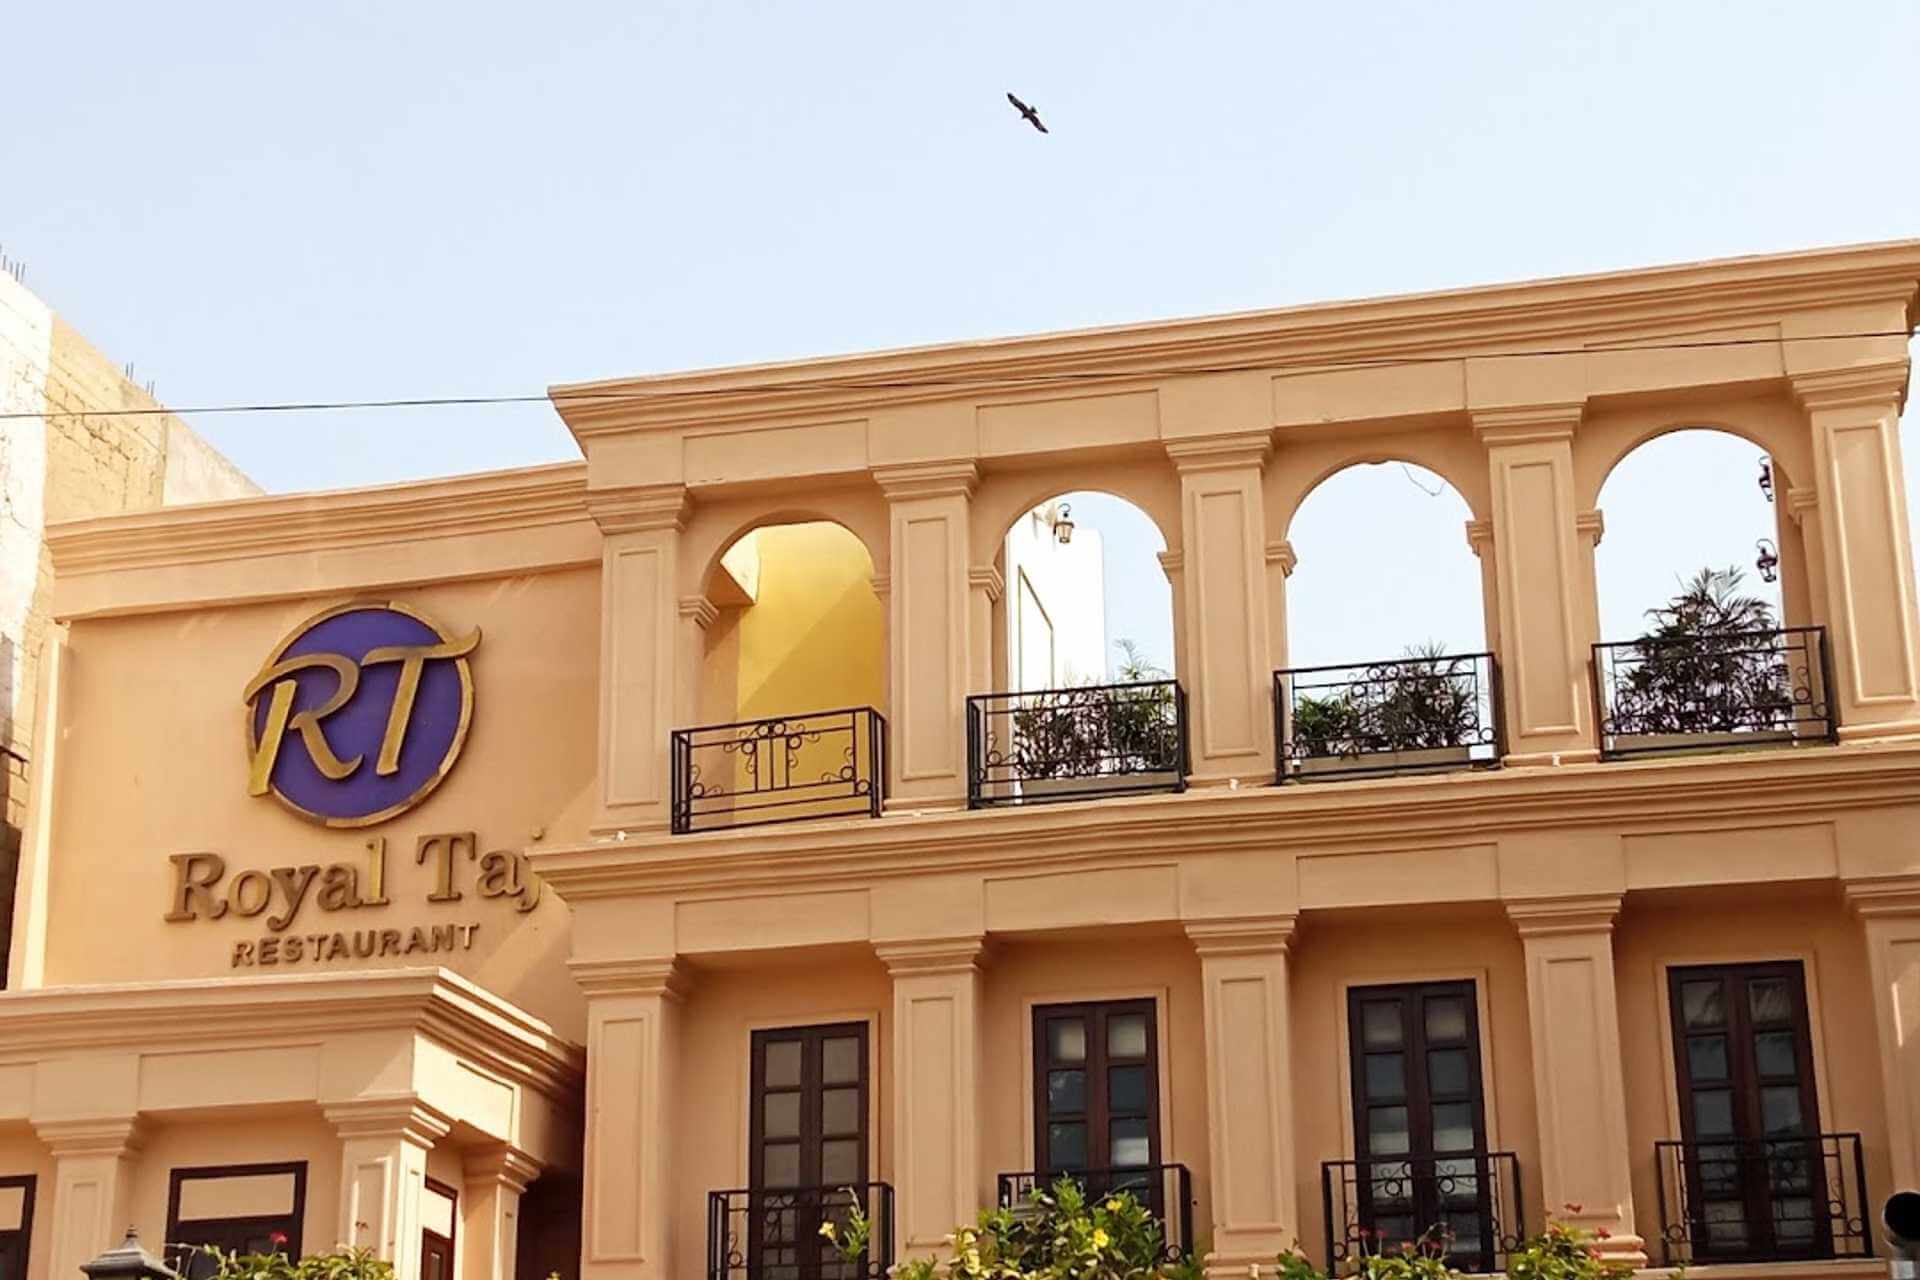 Royal Taj Restaurant Karachi